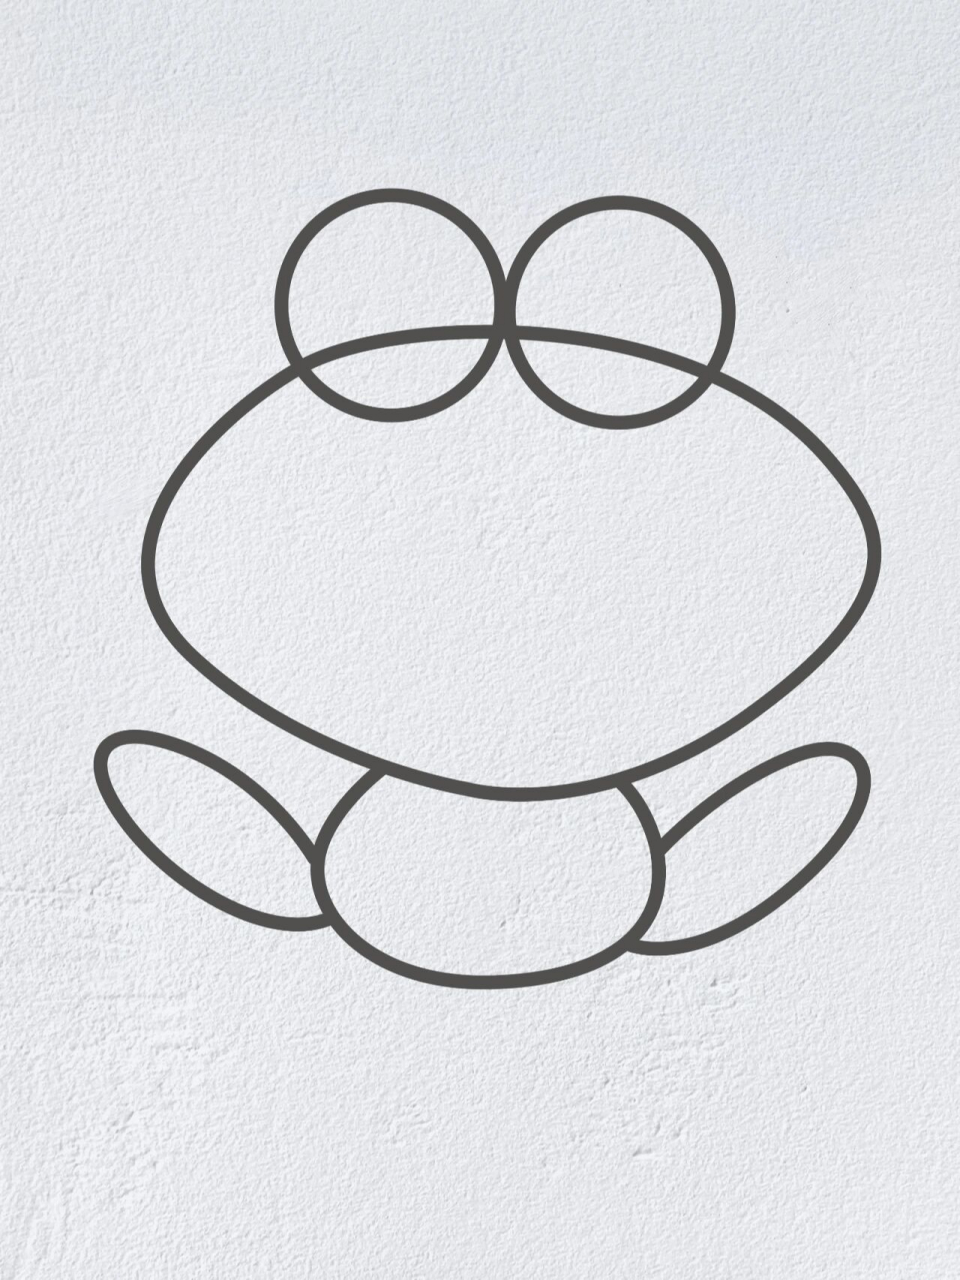 青蛙轮廓简笔画图片